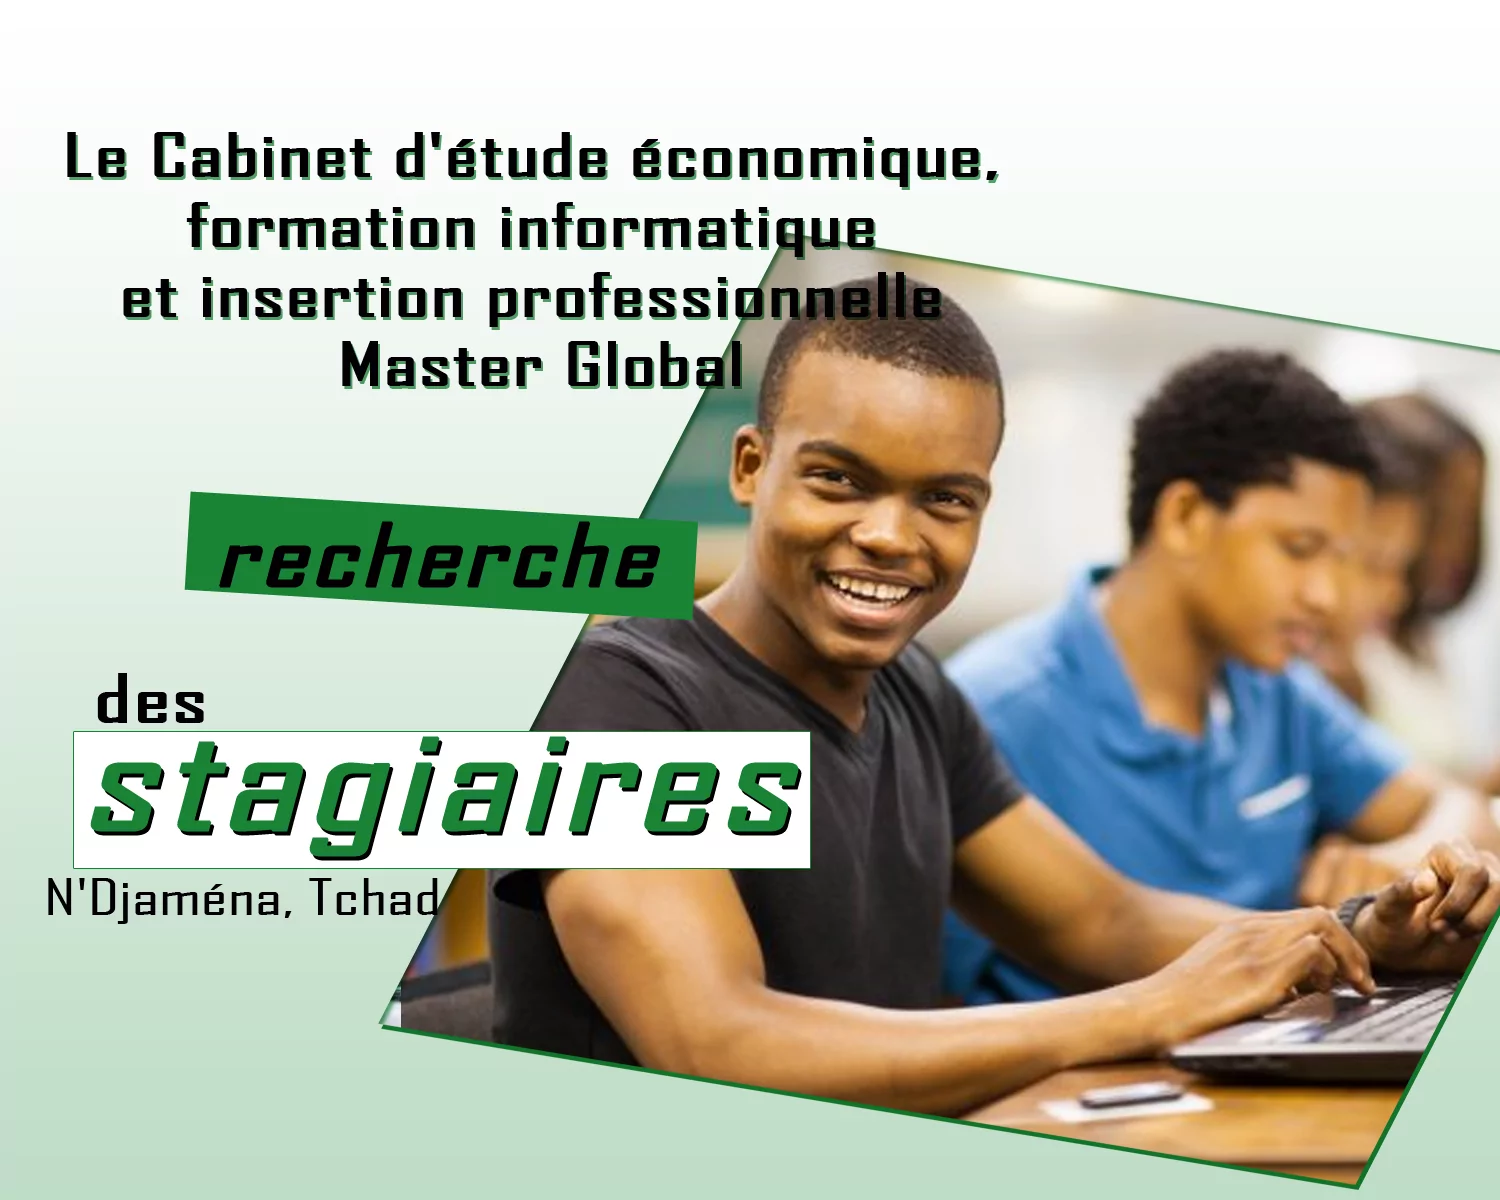 Le Cabinet d’étude économique, formation informatique et insertion professionnelle Master Global recherche des stagiaires, N’Djaména, Tchad